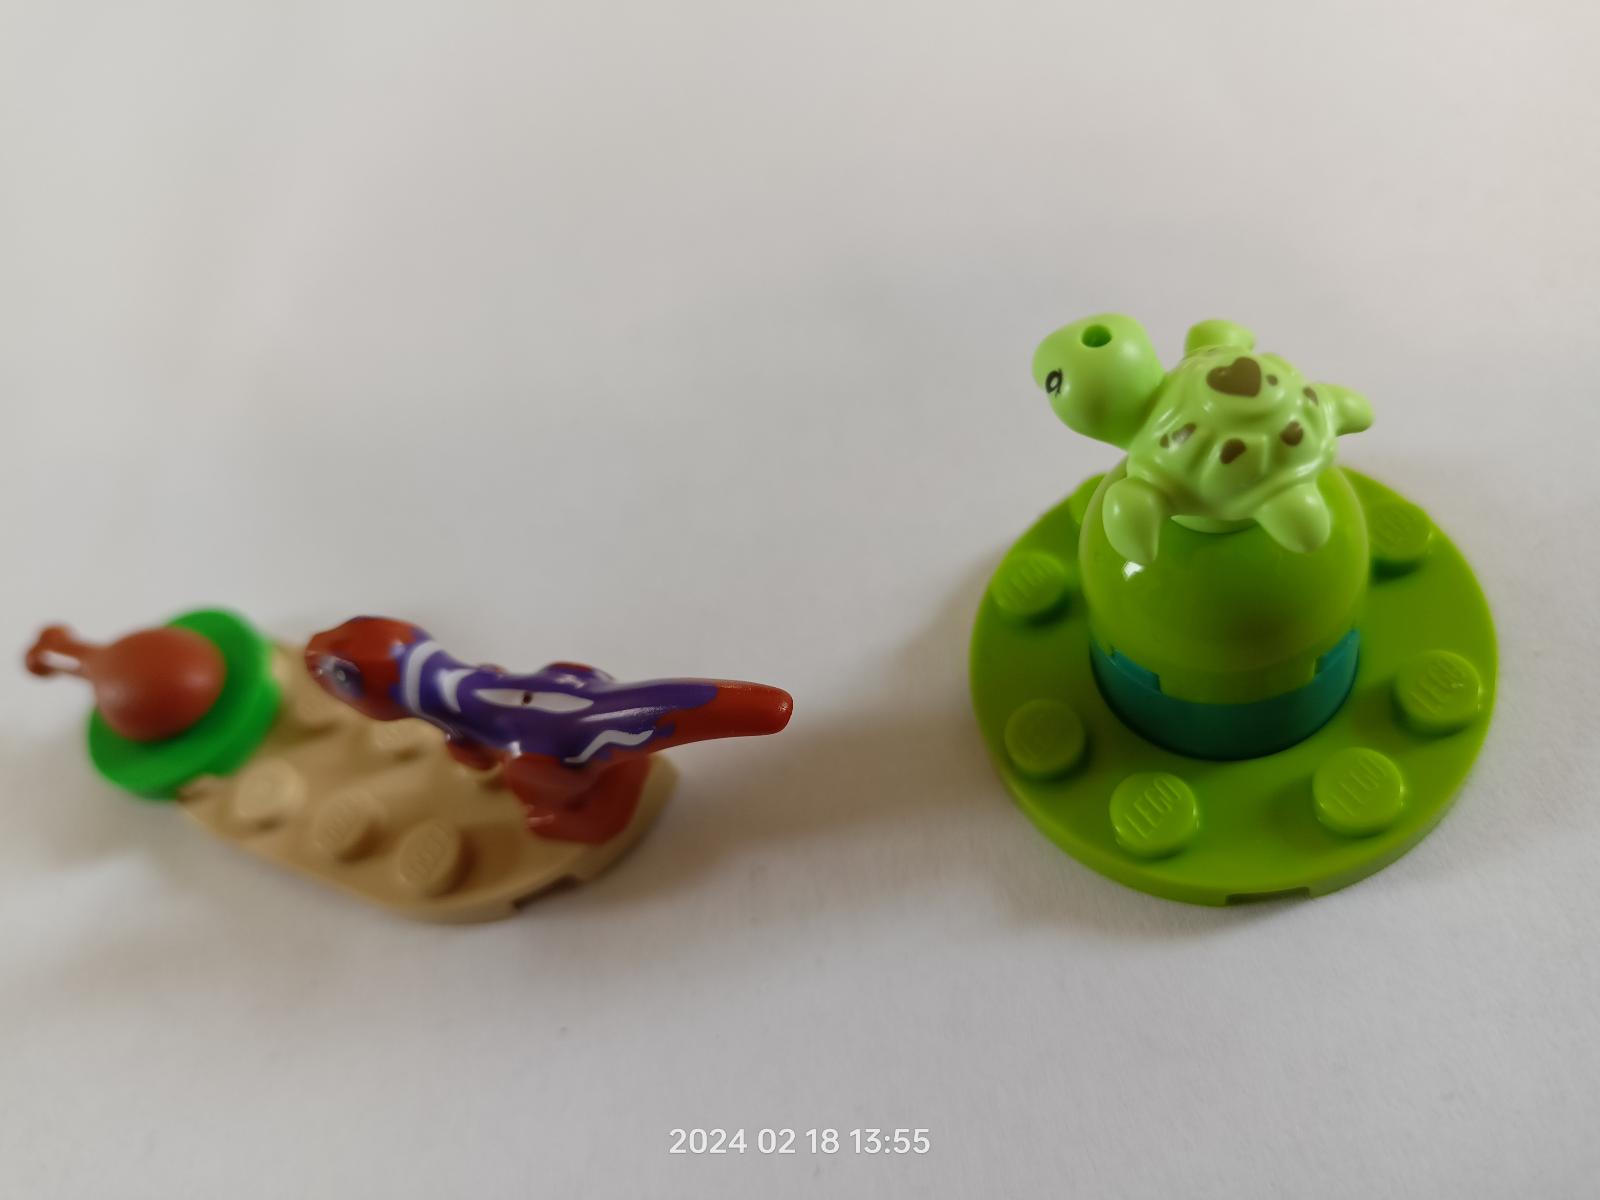 LEGO zvieratká - Korytnačka, Raptor mini a príslušenstvo ( doplnky ) - Hračky